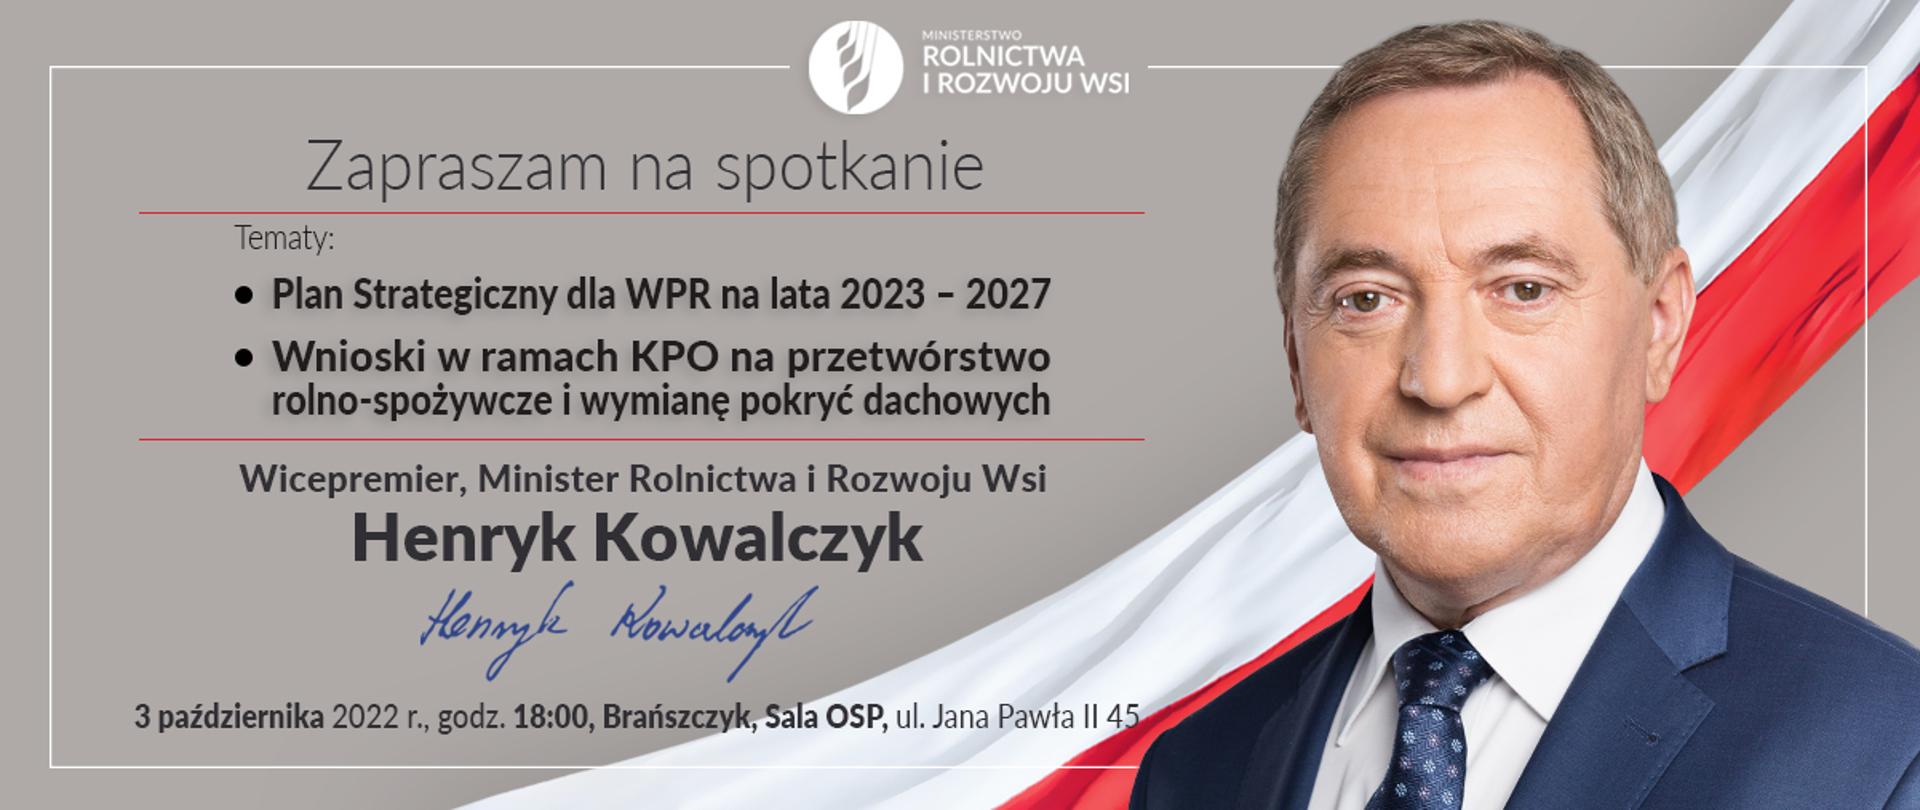 Plakat promujący spotkanie, przedstawiony temat spotkania, data i miejsce. Obok tekstu postać ministra Kowalczyka. W tle polska flaga. 